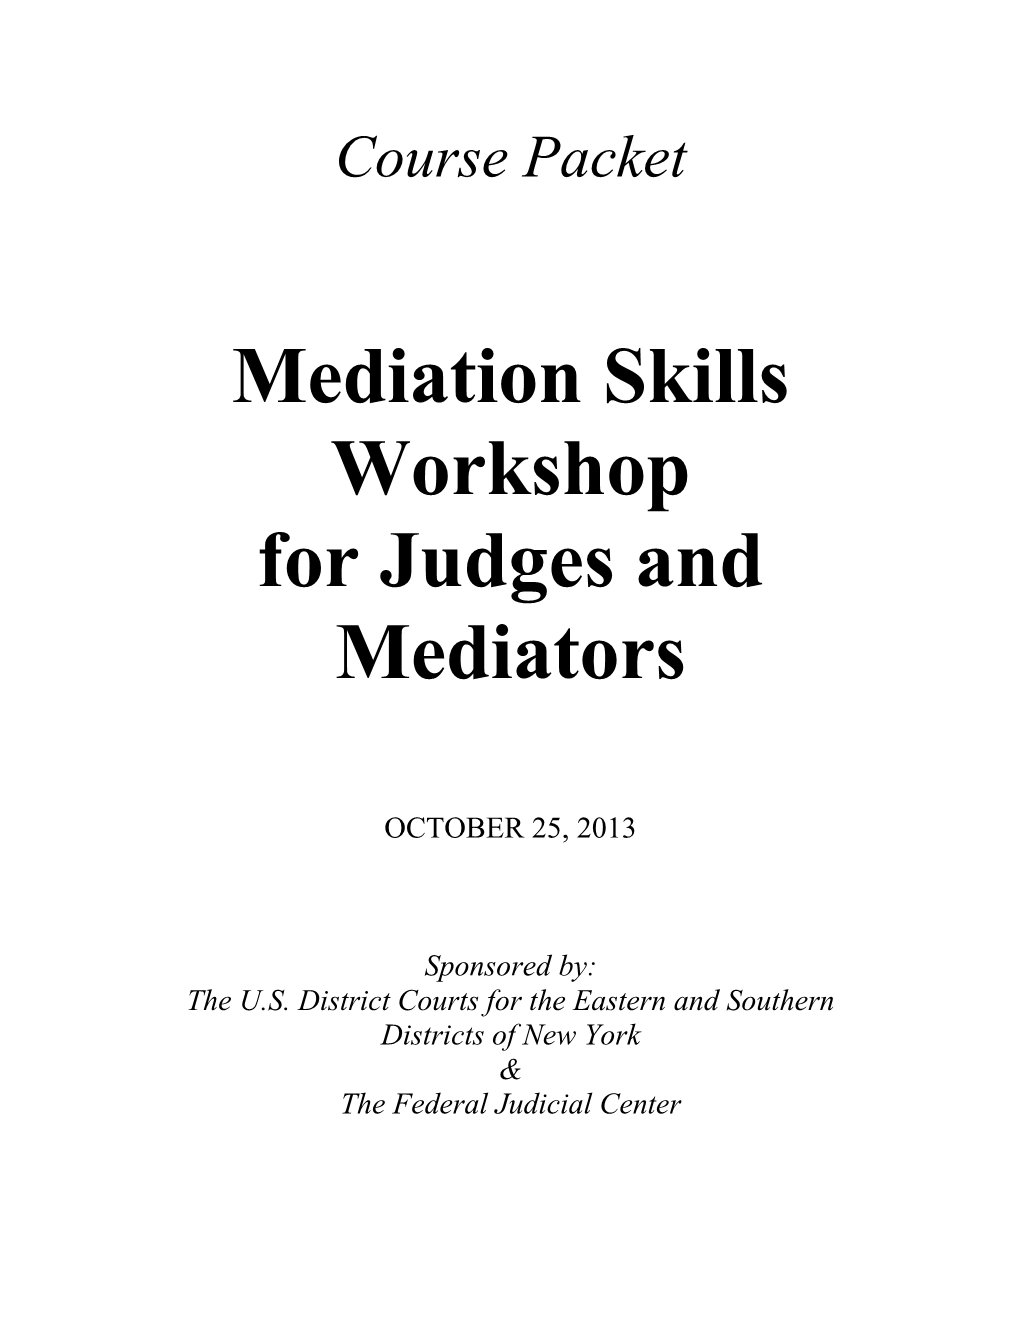 Course Packet Mediation Skills Workshop for Judges and Mediators